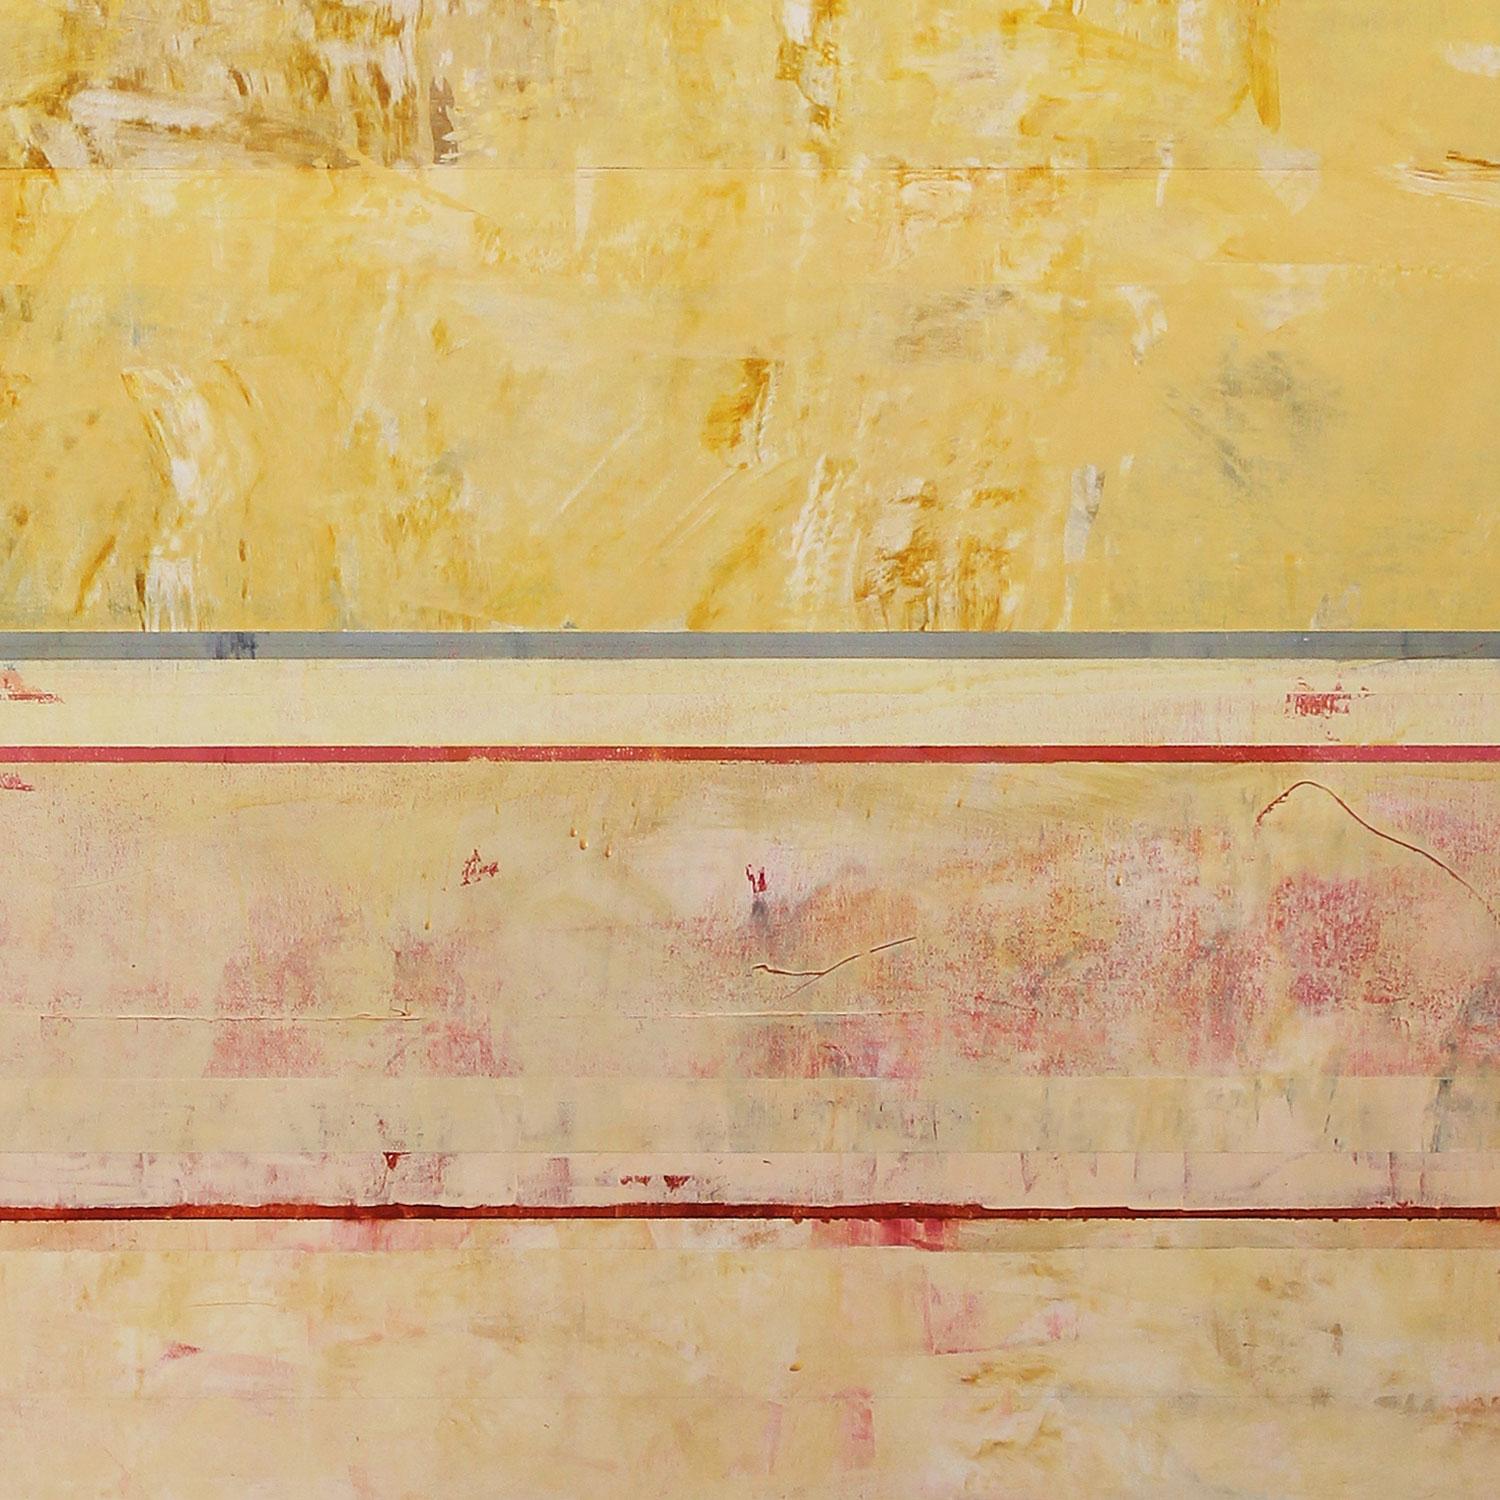 Cycle du Sud (peinture abstraite)

Acrylique sur toile - Non encadré.

Clay Johnson est un peintre abstrait américain dont les compositions réductivistes explorent les relations entre la couleur, la forme et la texture. Il vit et travaille à